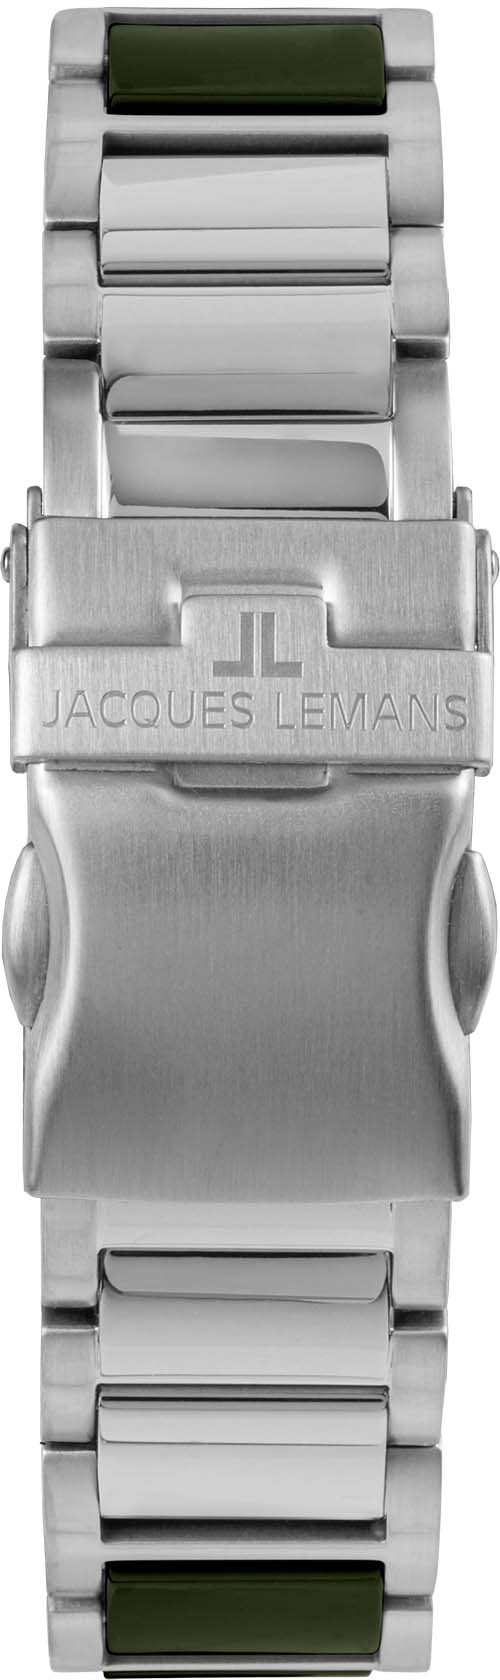 Jacques Lemans Keramikuhr »Liverpool, 42-10C« ♕ bei